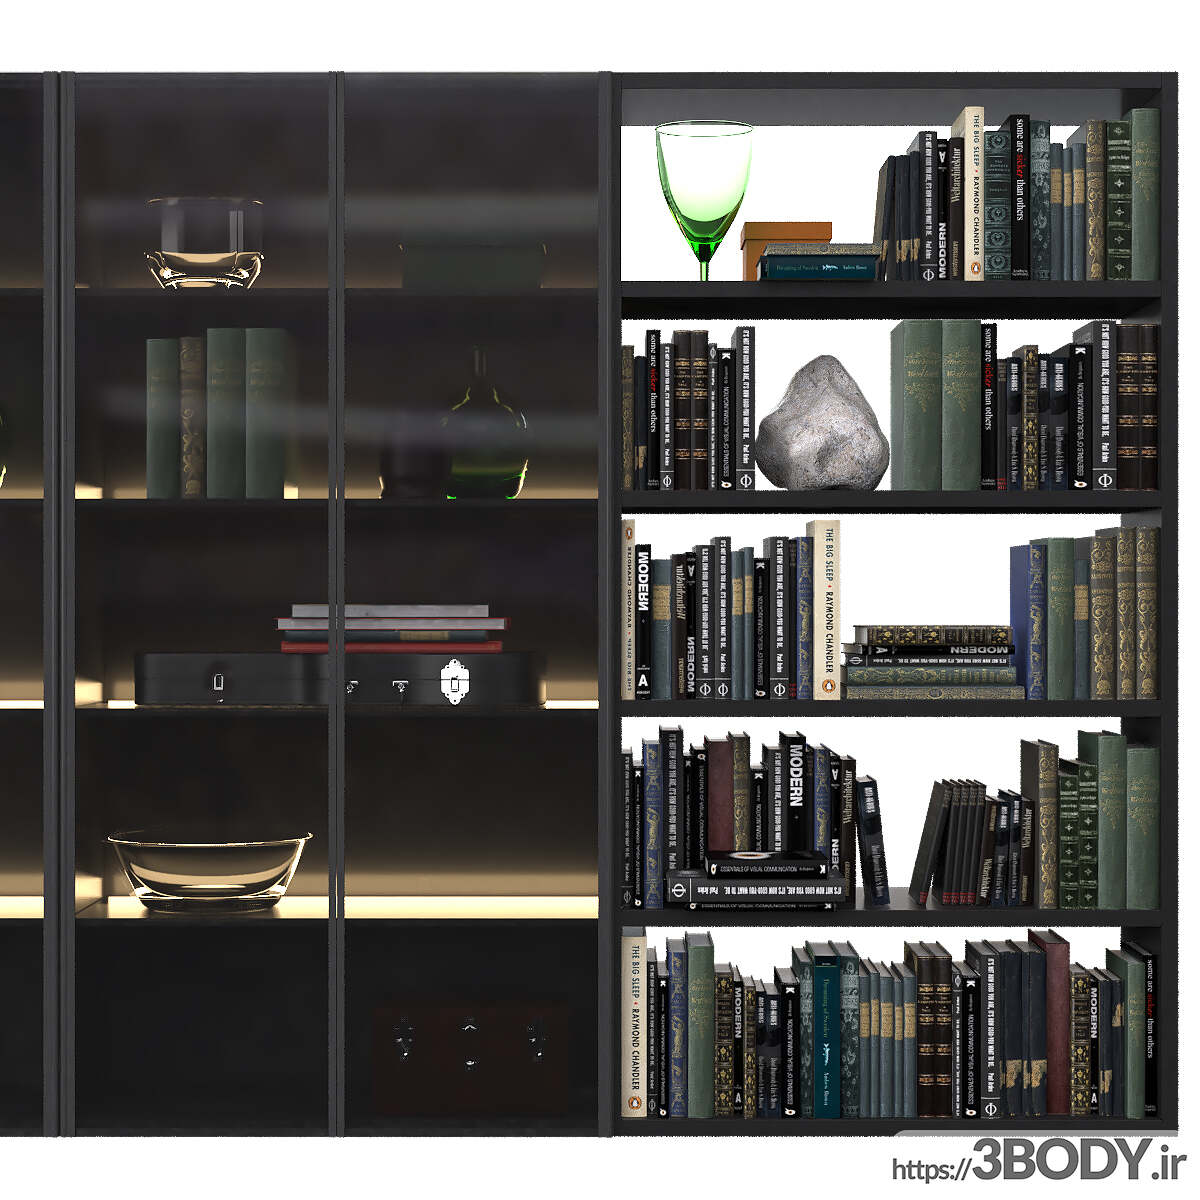 مدل سه بعدی دکور زیبای کتابخانه عکس 4